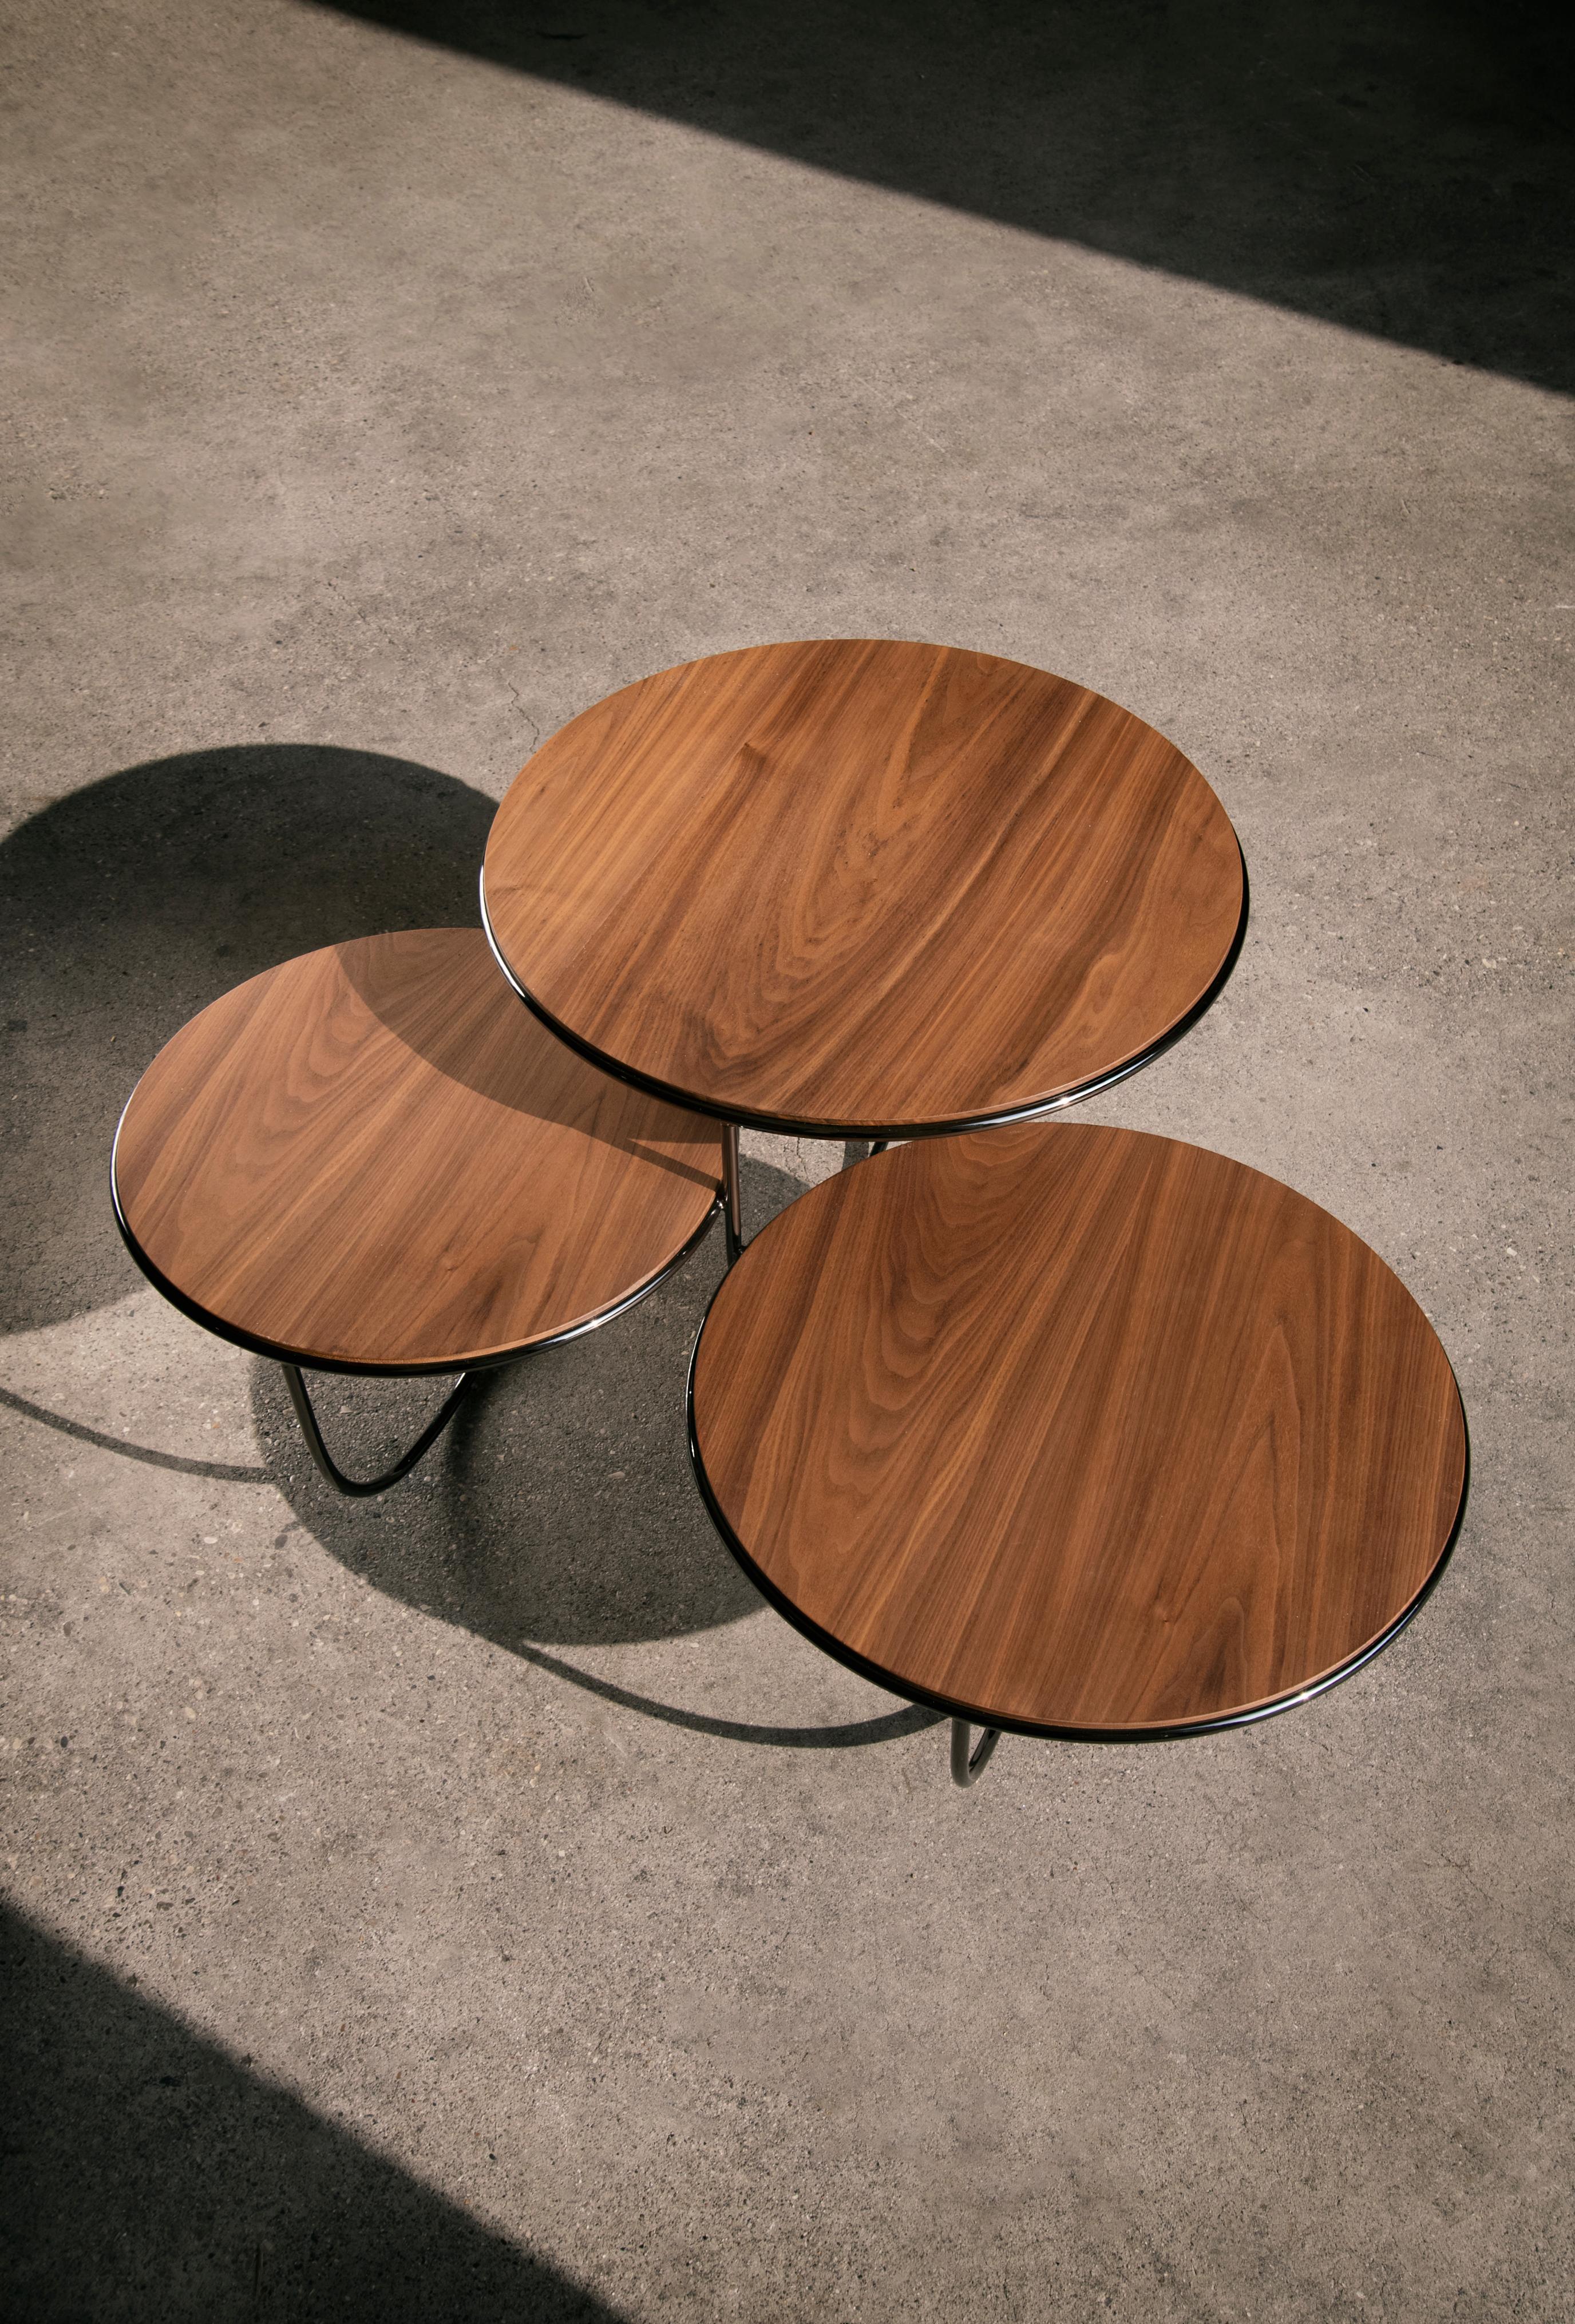 Italian La Manufacture-Paris Trio Table Designed by Nendo For Sale